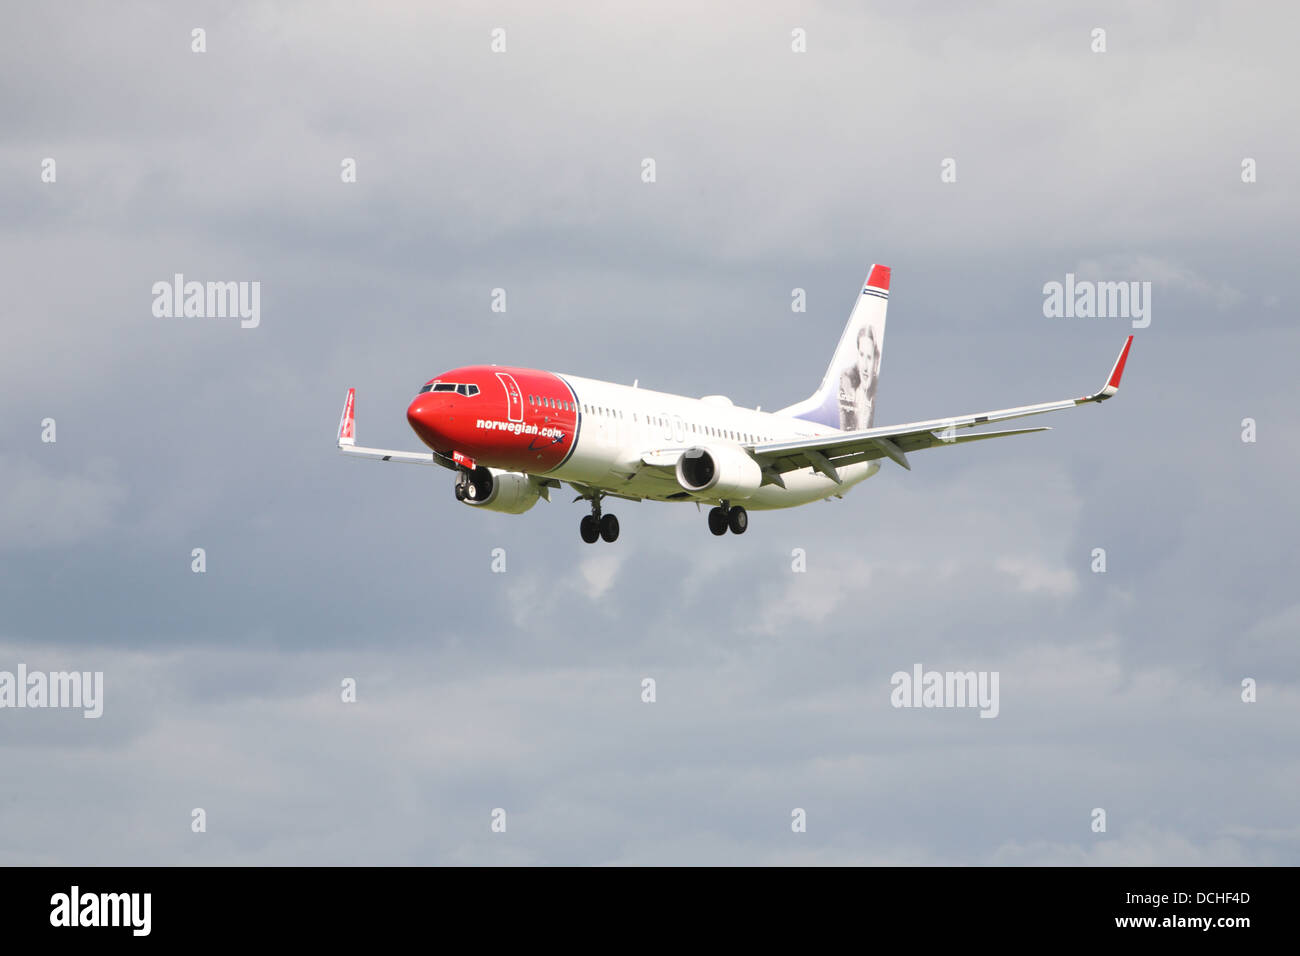 Norwegian airways landing at Dublin Stock Photo